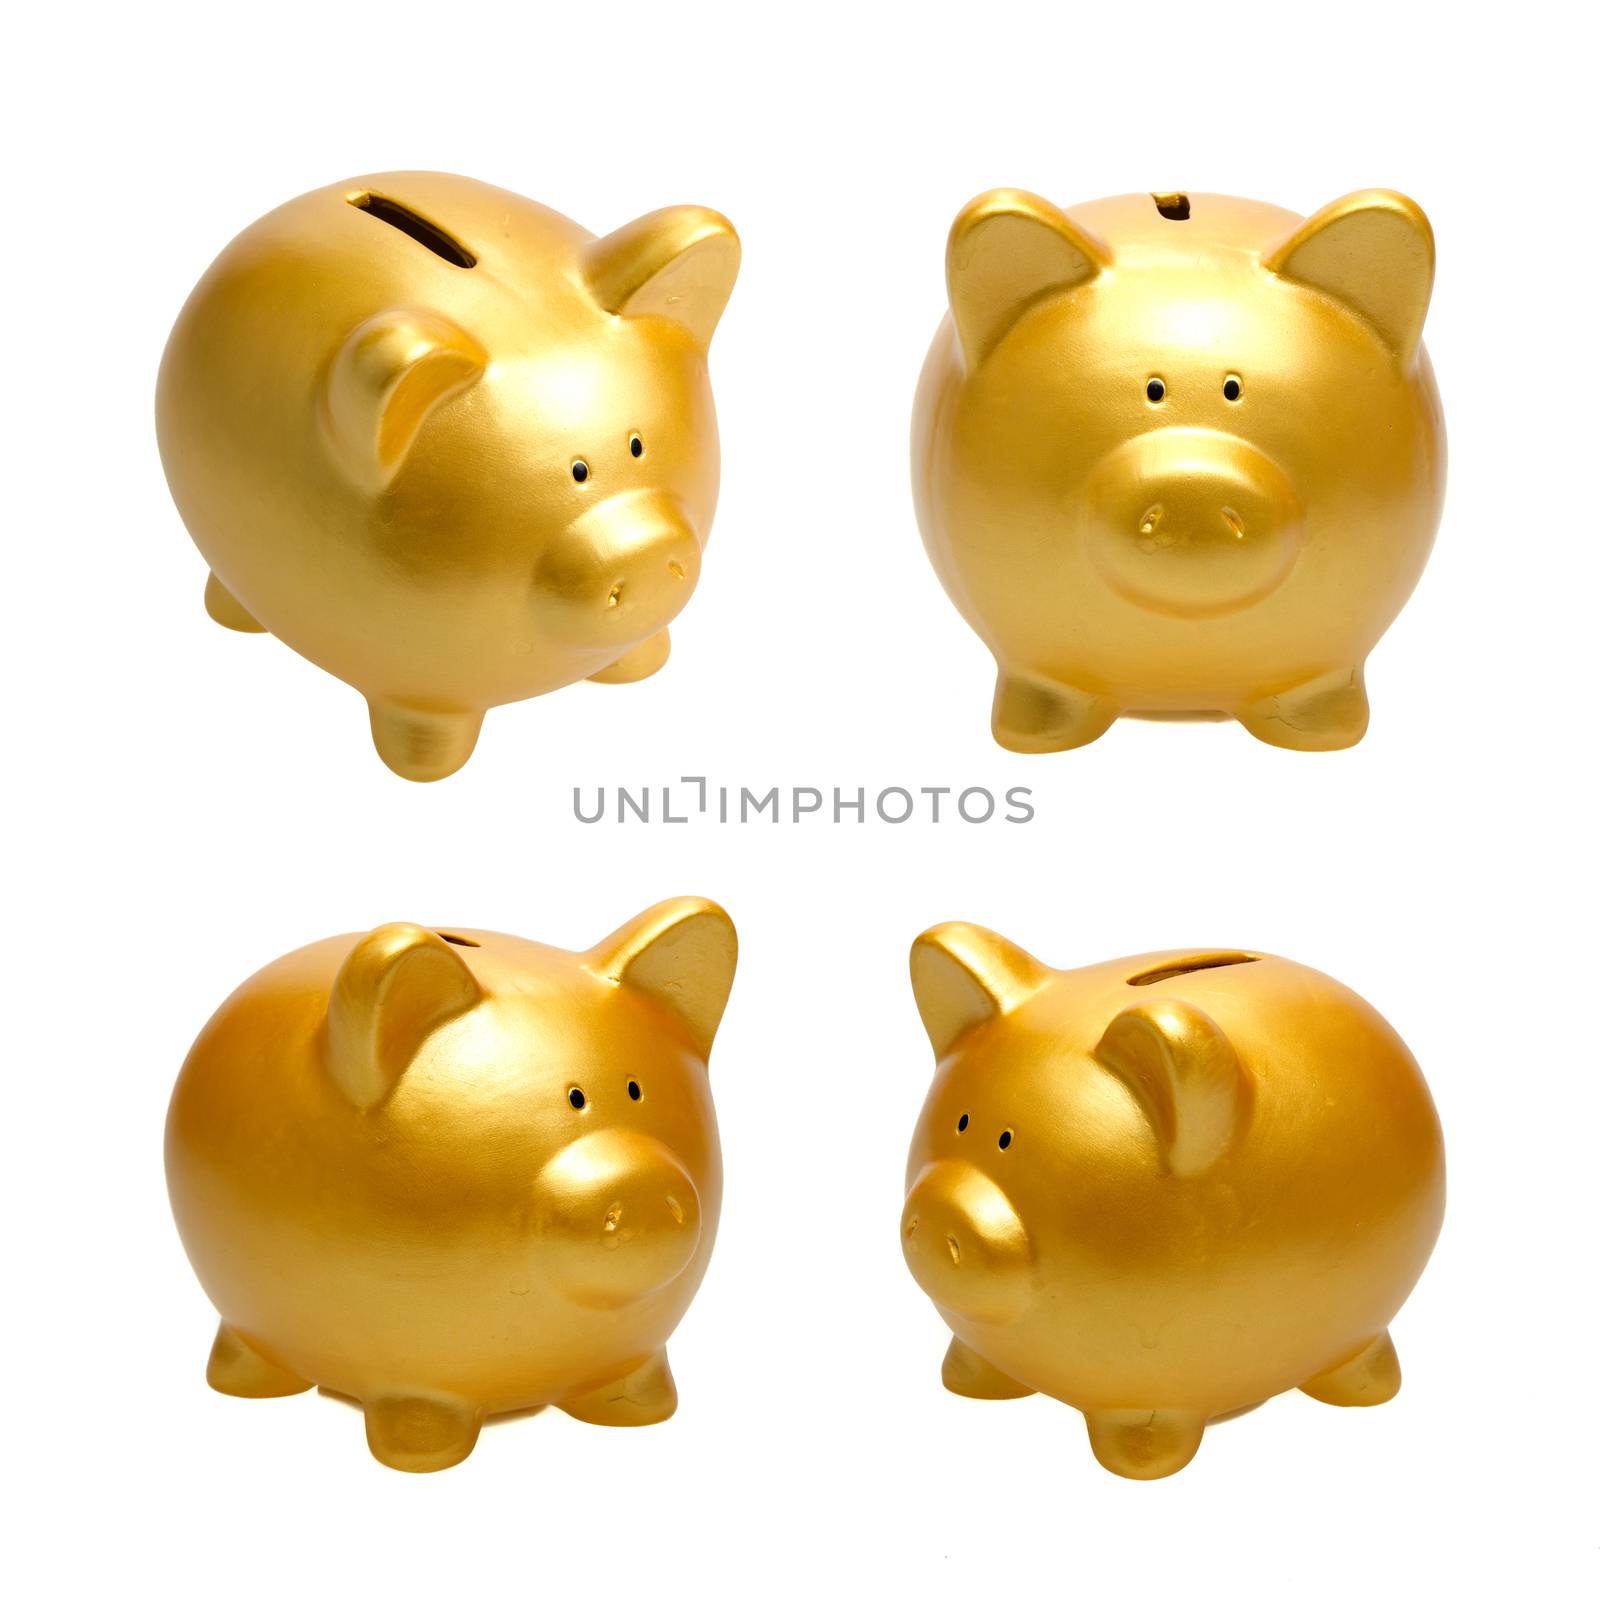 Golden Piggy Bank by tehcheesiong